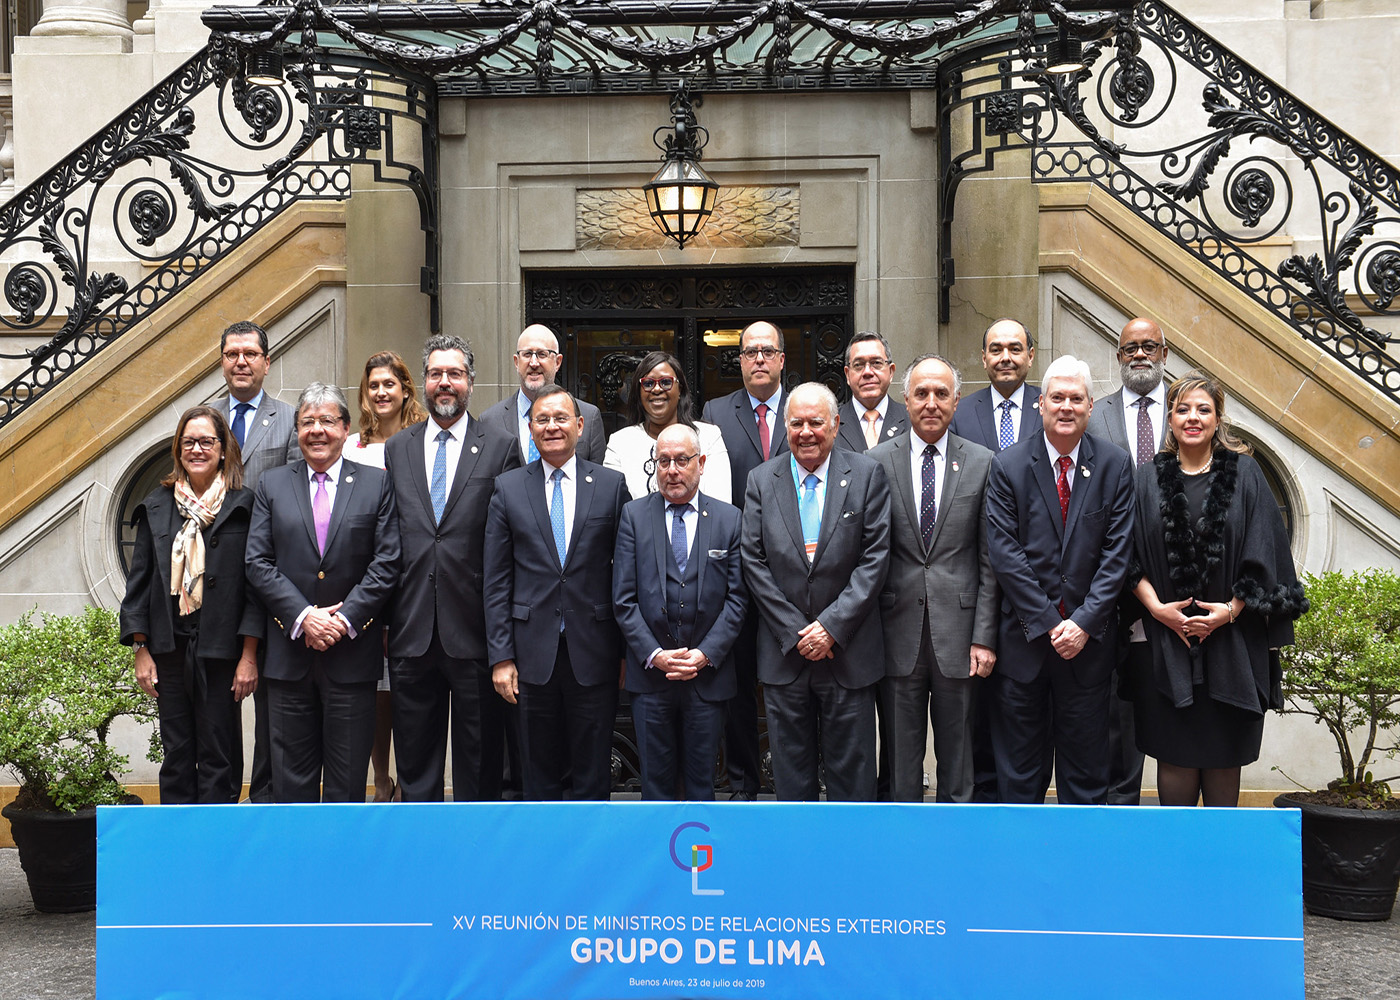 Declaración de la XV Reunión de Ministros de Relaciones Exteriores del Grupo de Lima